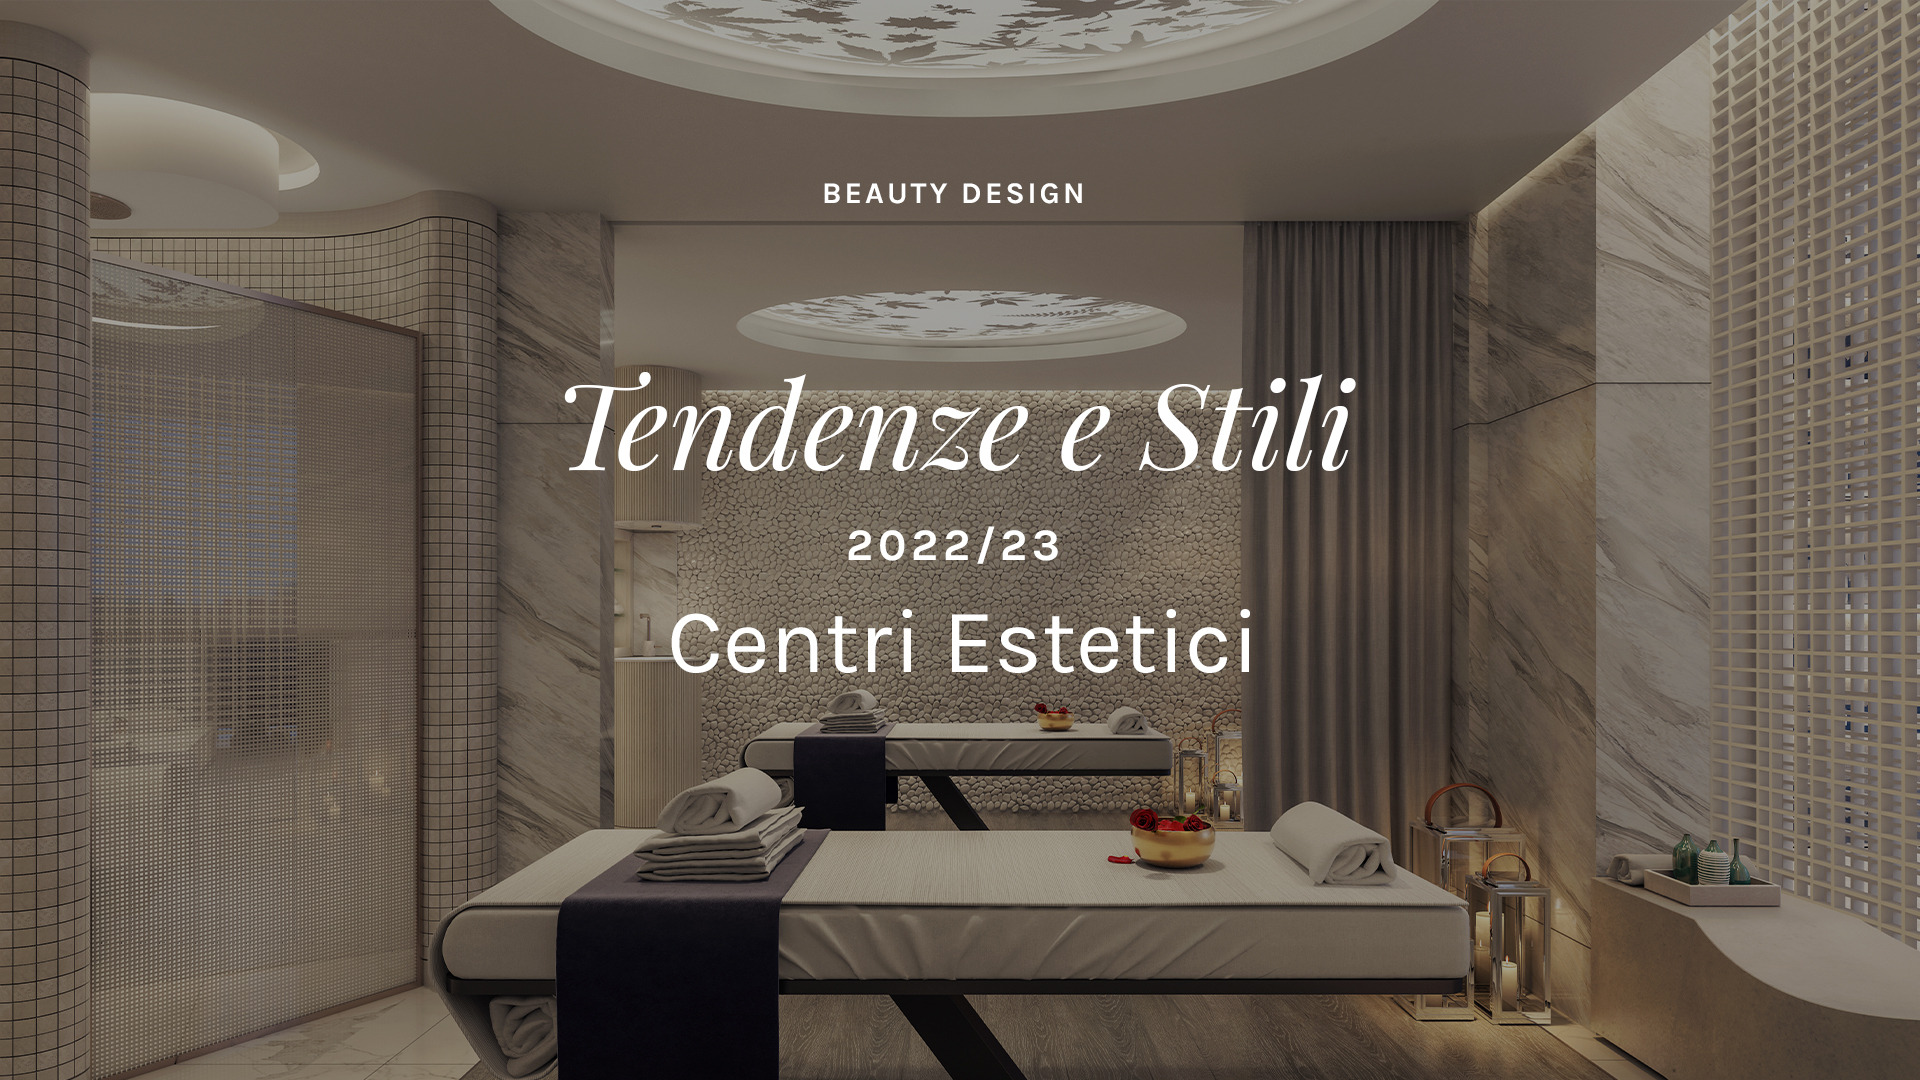 Tendenze e Stili per il Beauty Design centri estetici del 2022/23